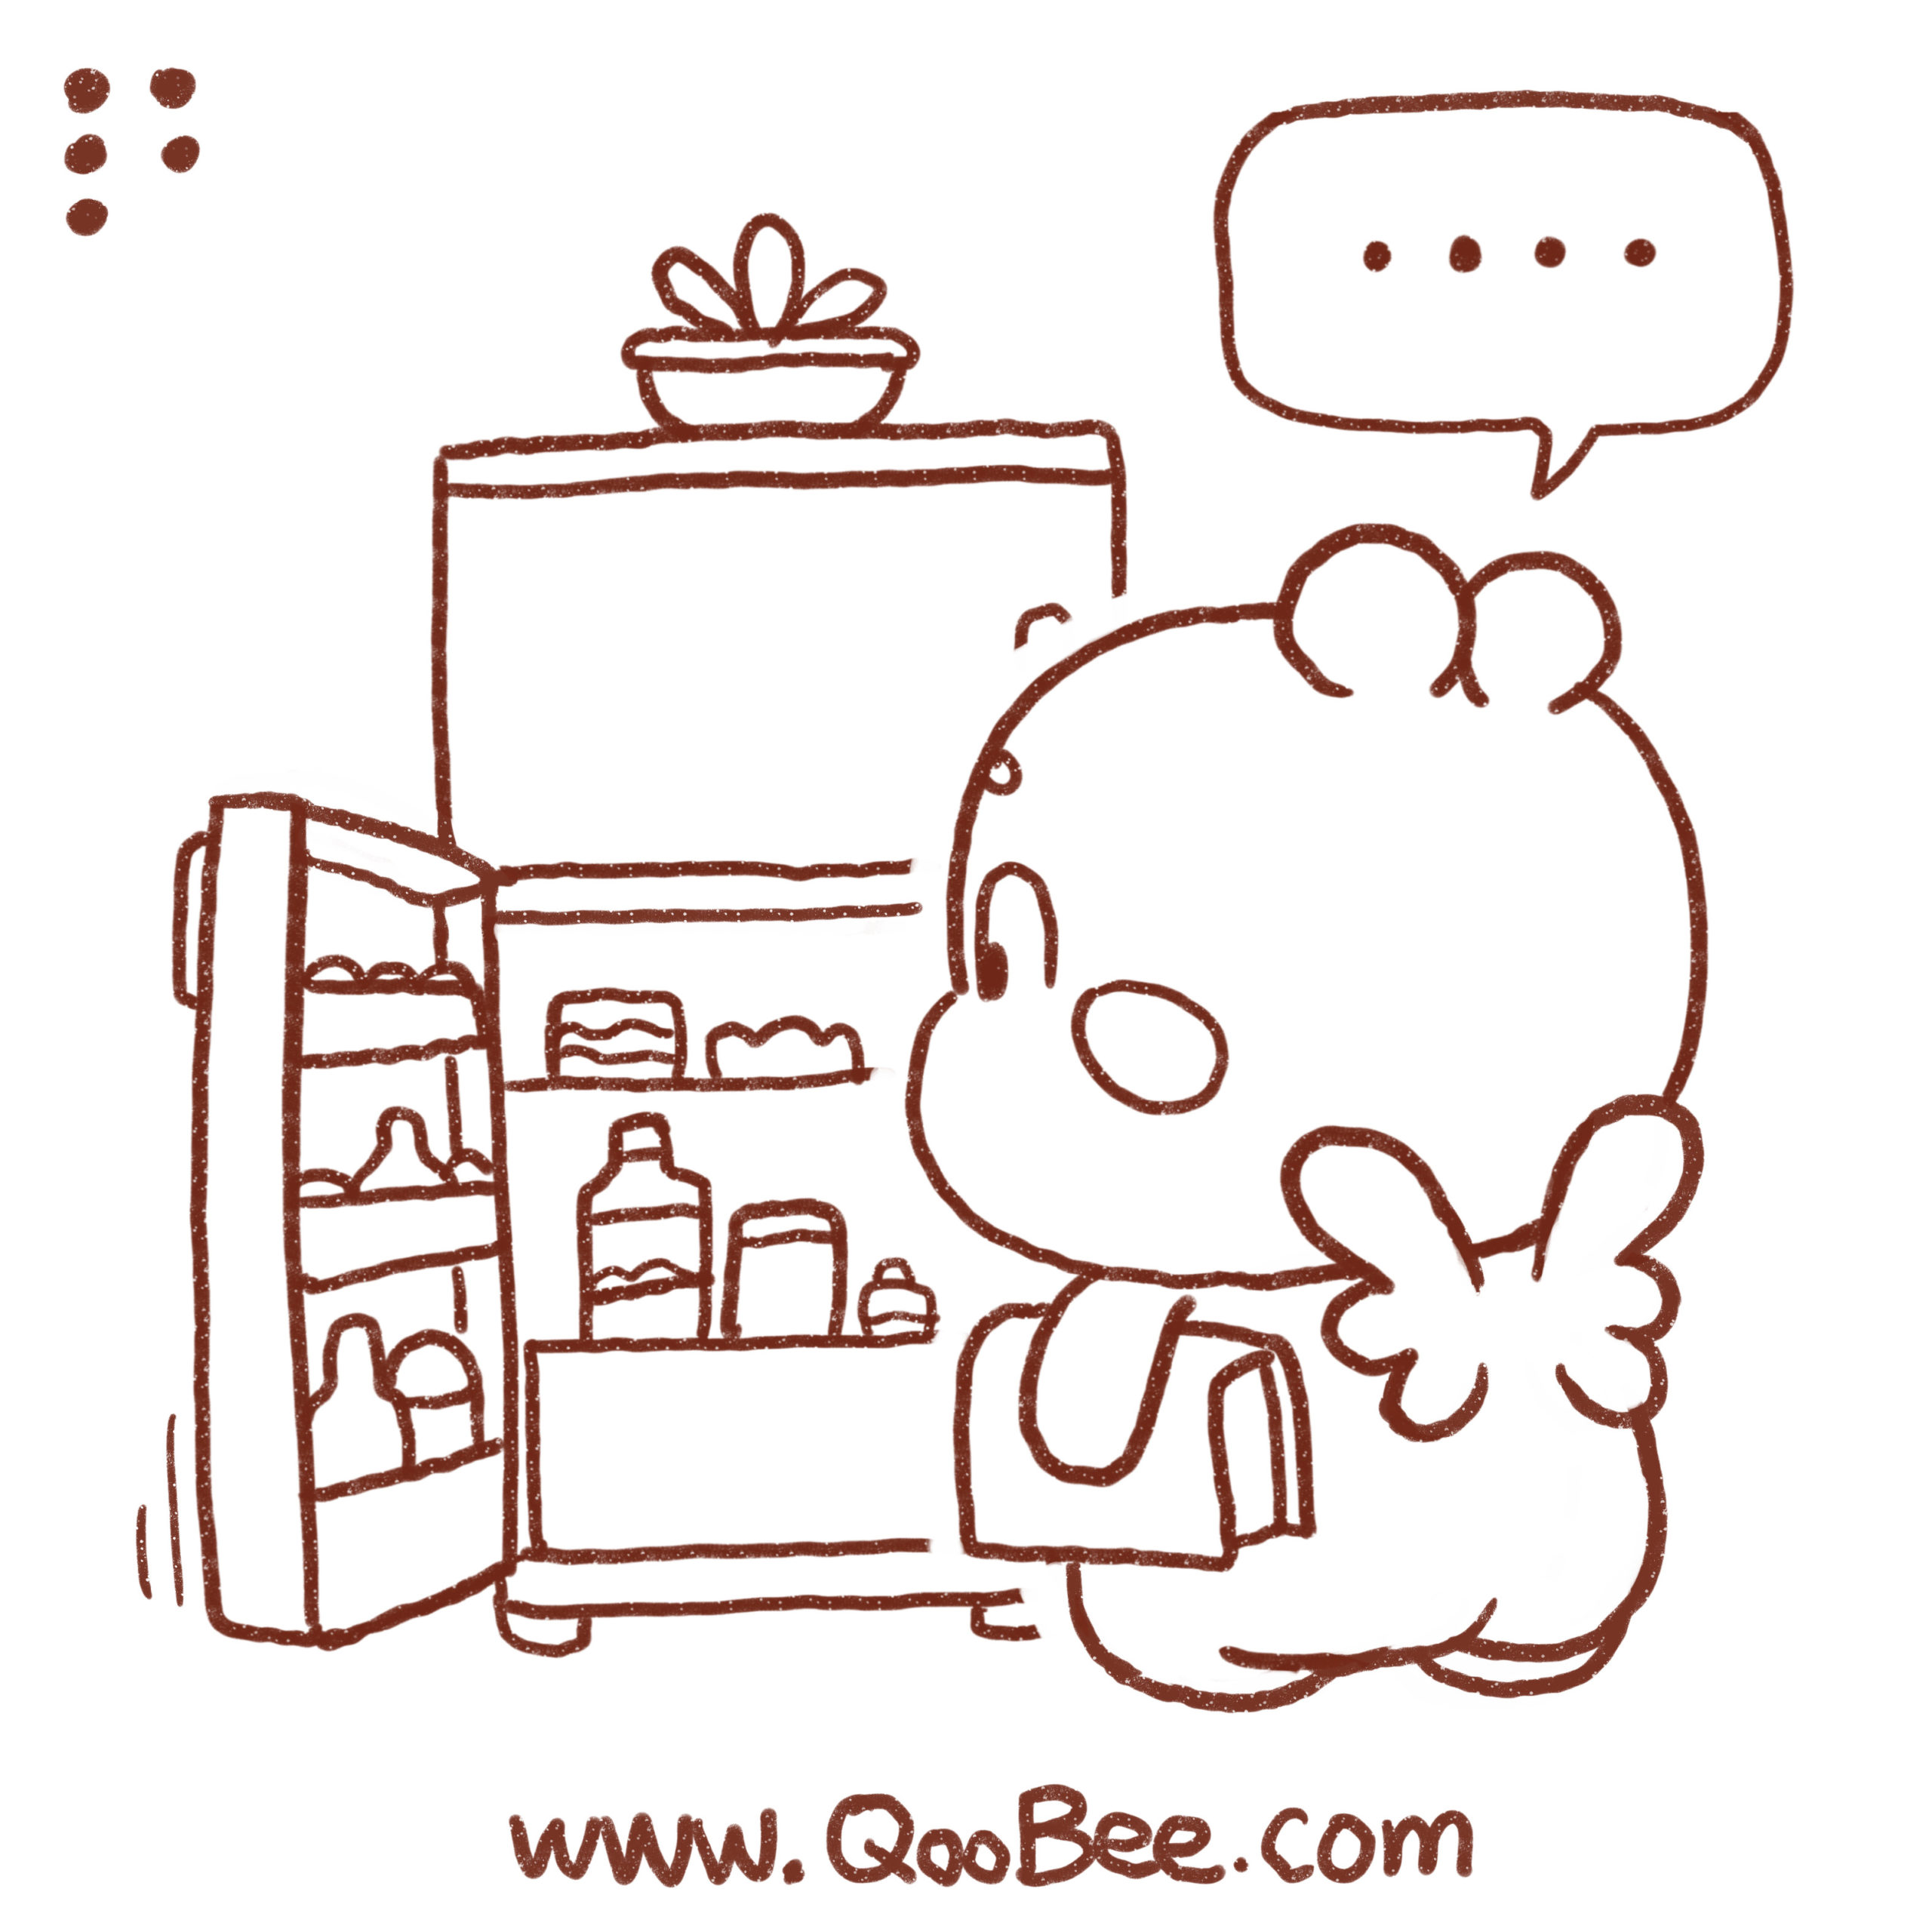 Qoobee comic 090519 5